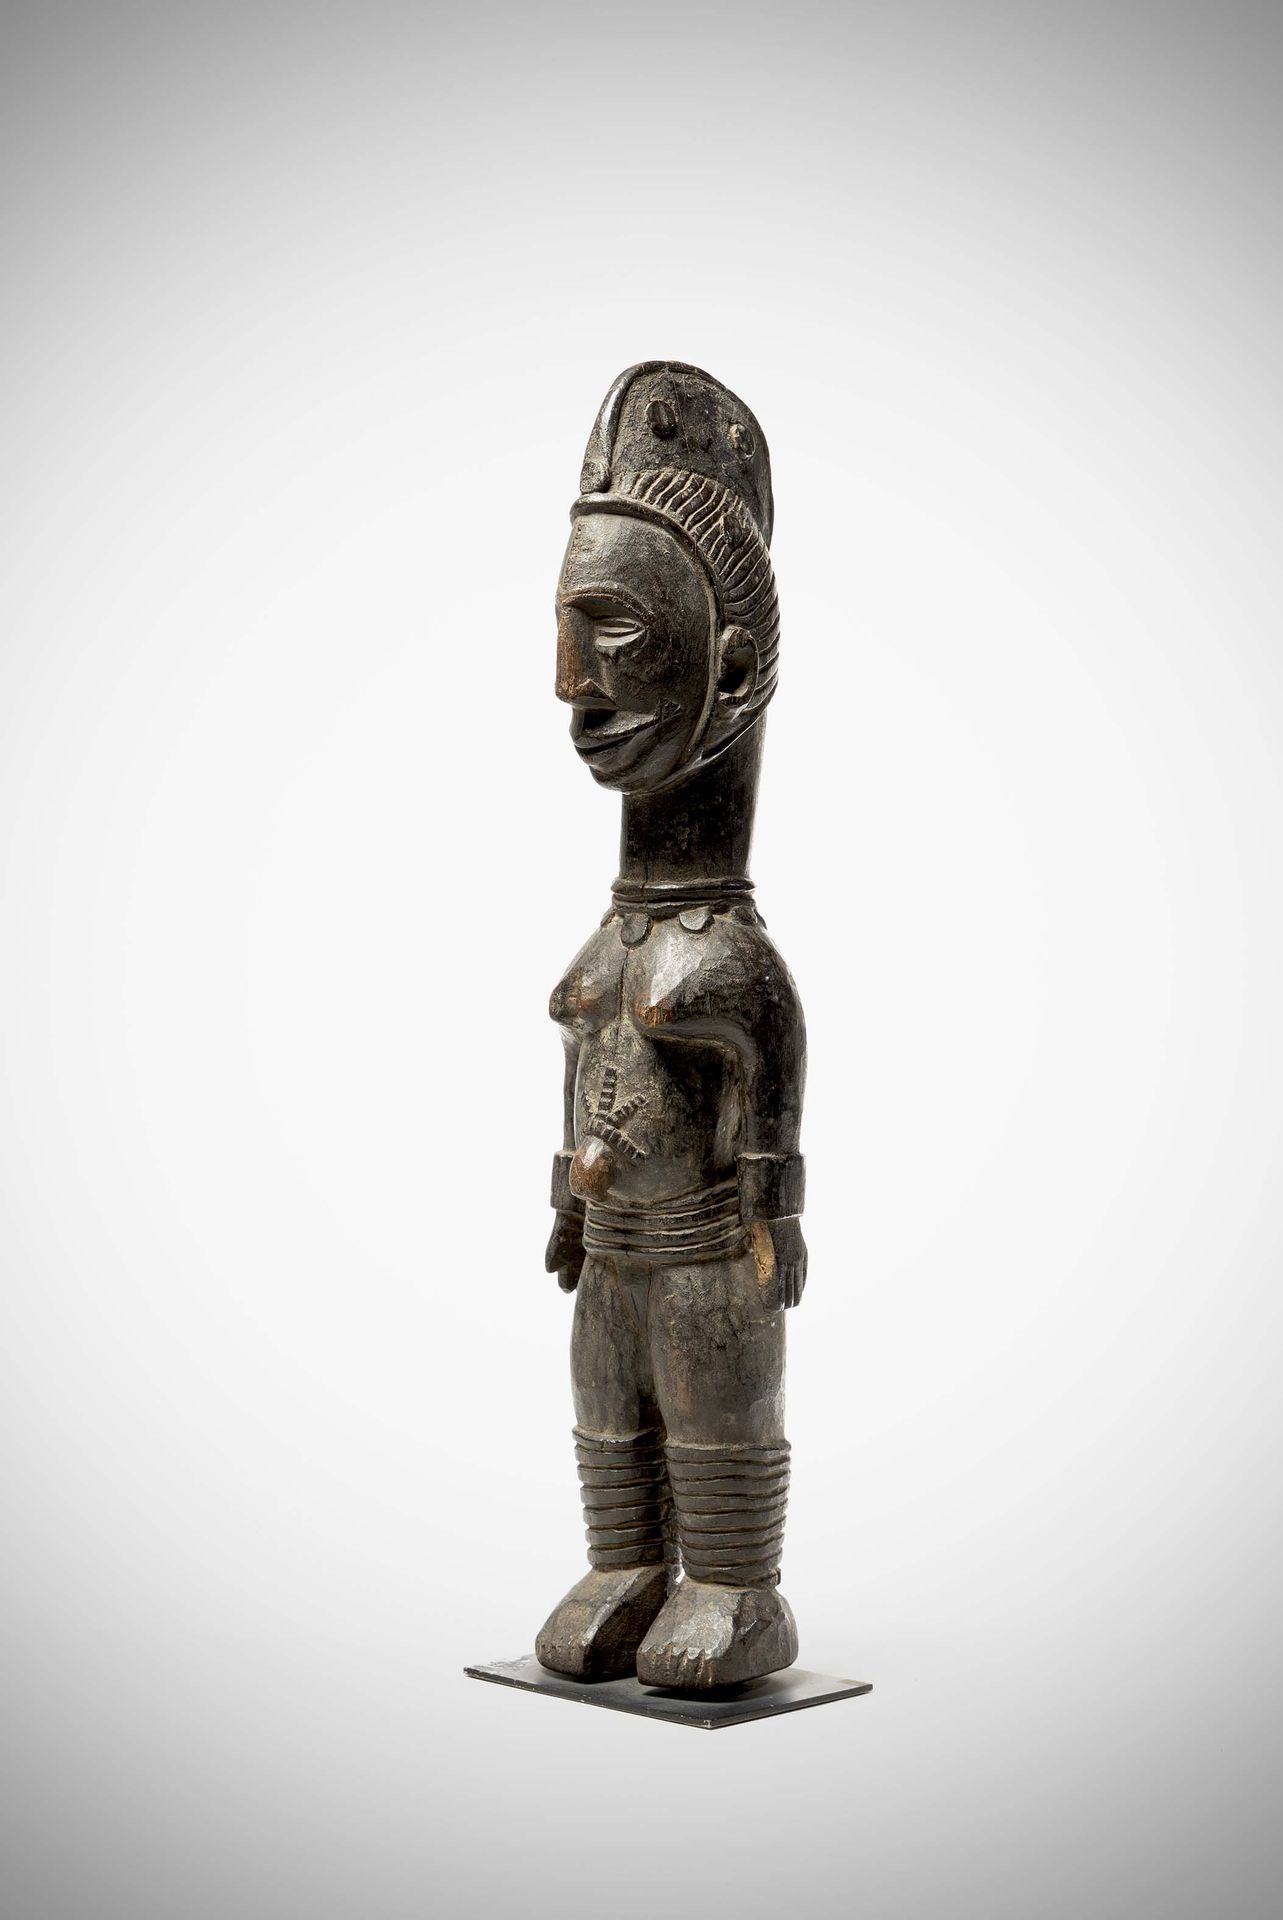 Null Ibo

( Nigeria ) Grande bambola in legno con patina nera laccata, raffigura&hellip;